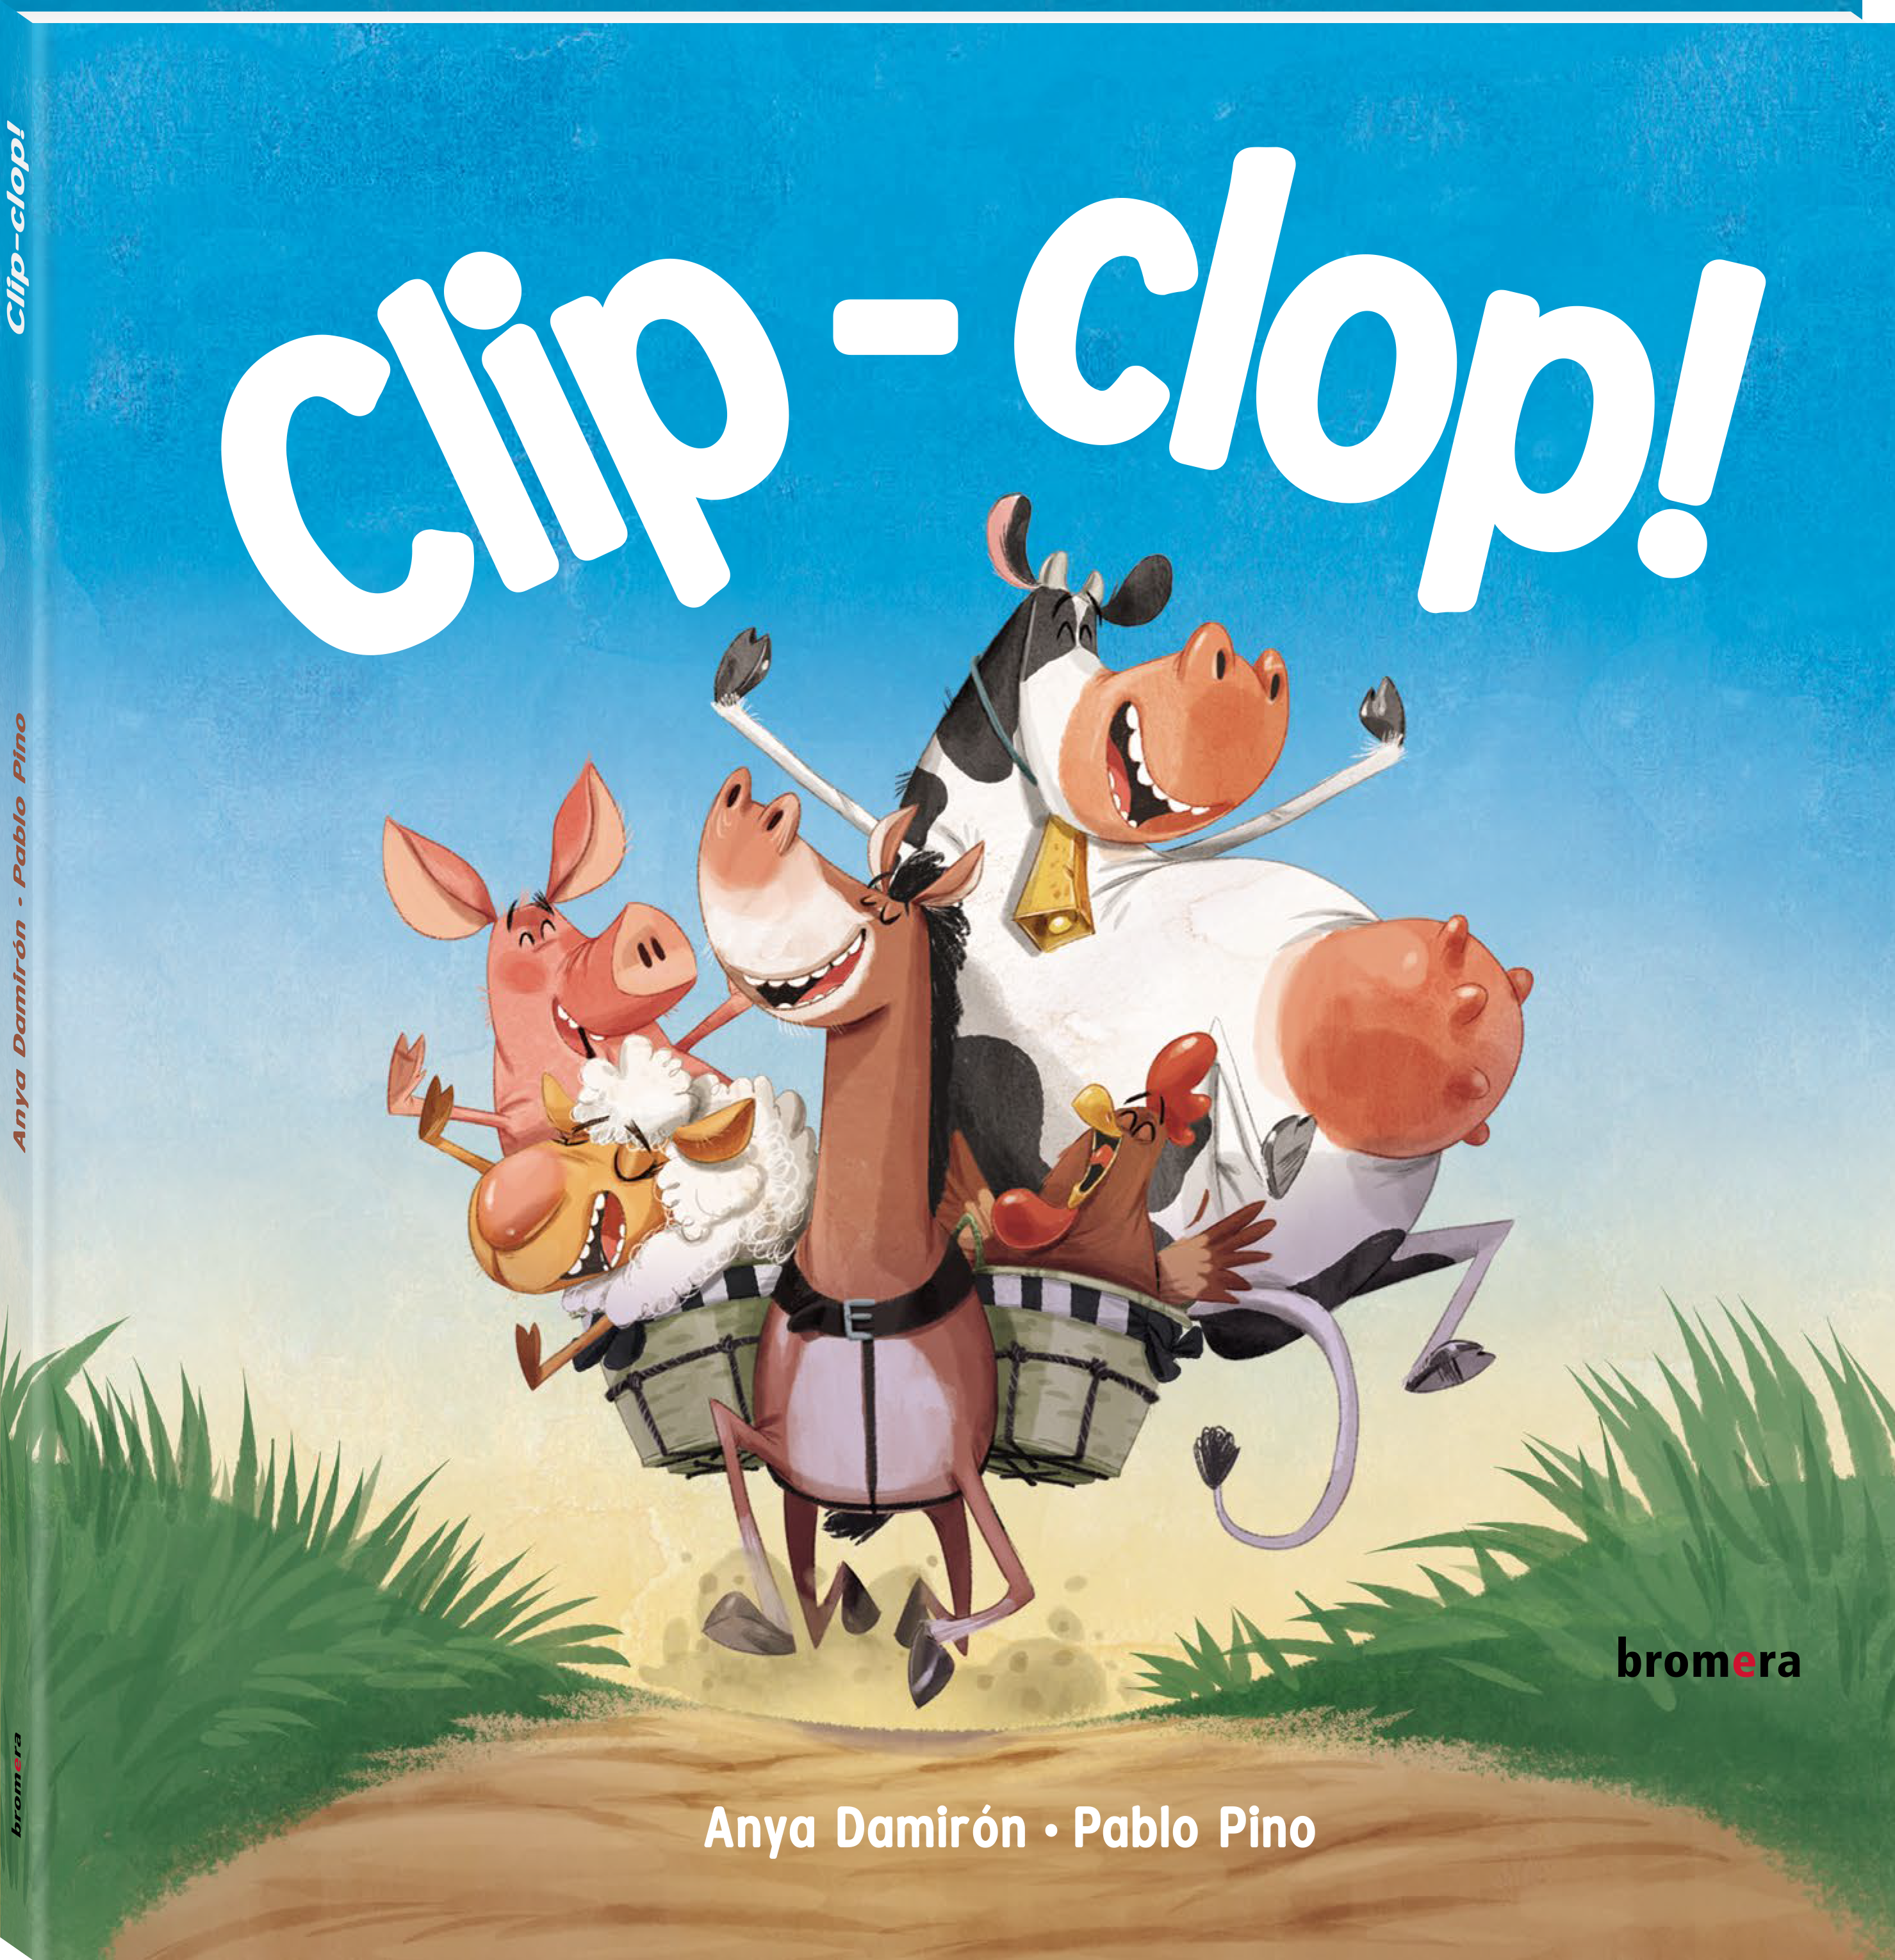 Clip-clop!